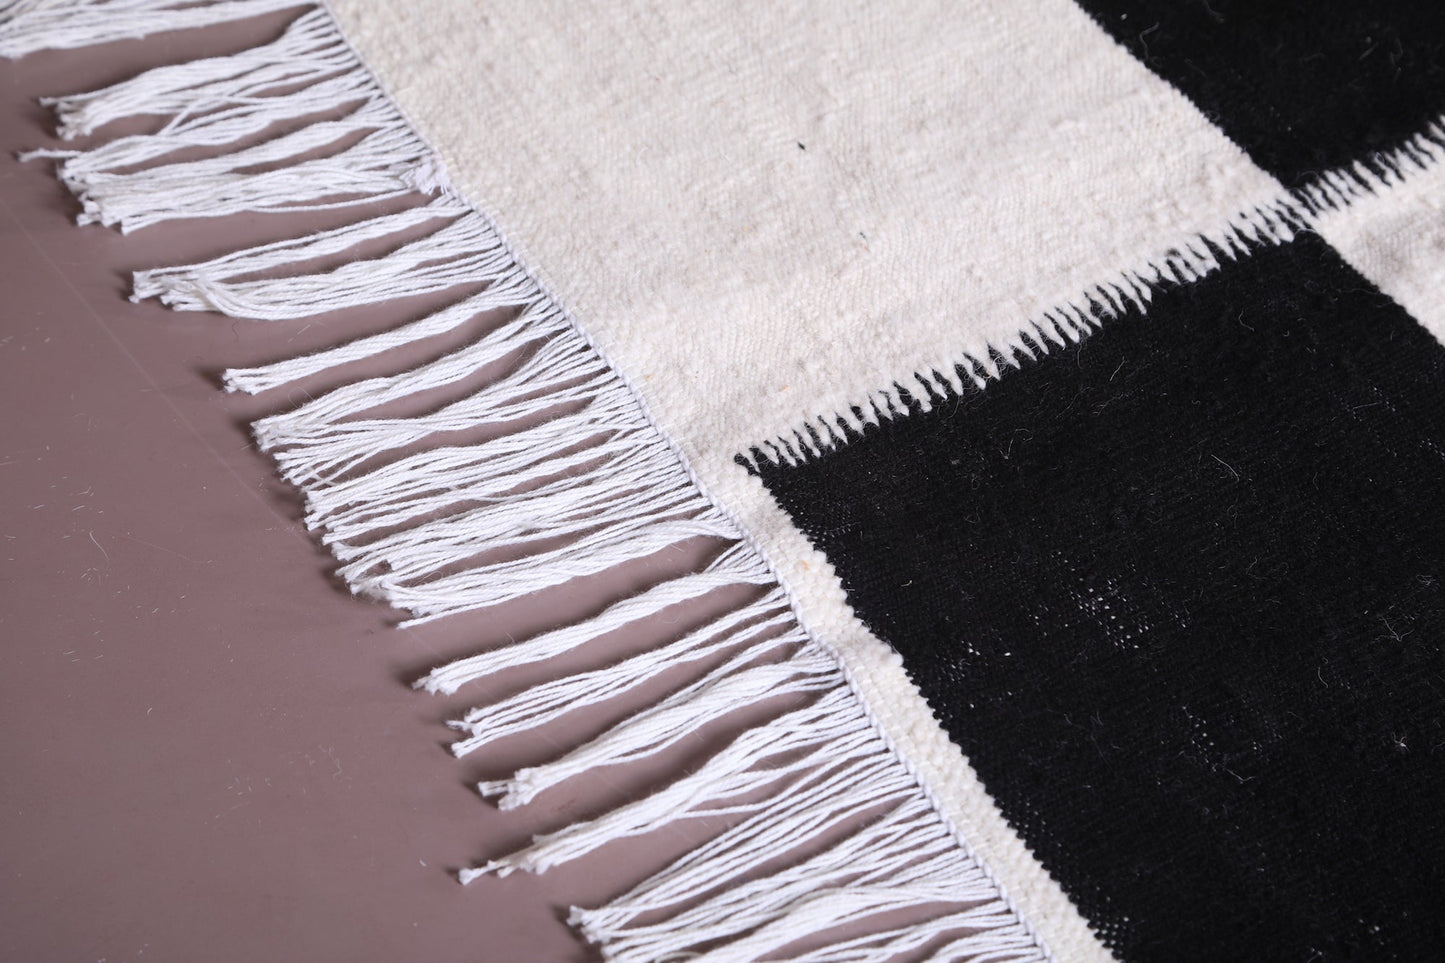 Custom handmade rug , Black and white woven carpet